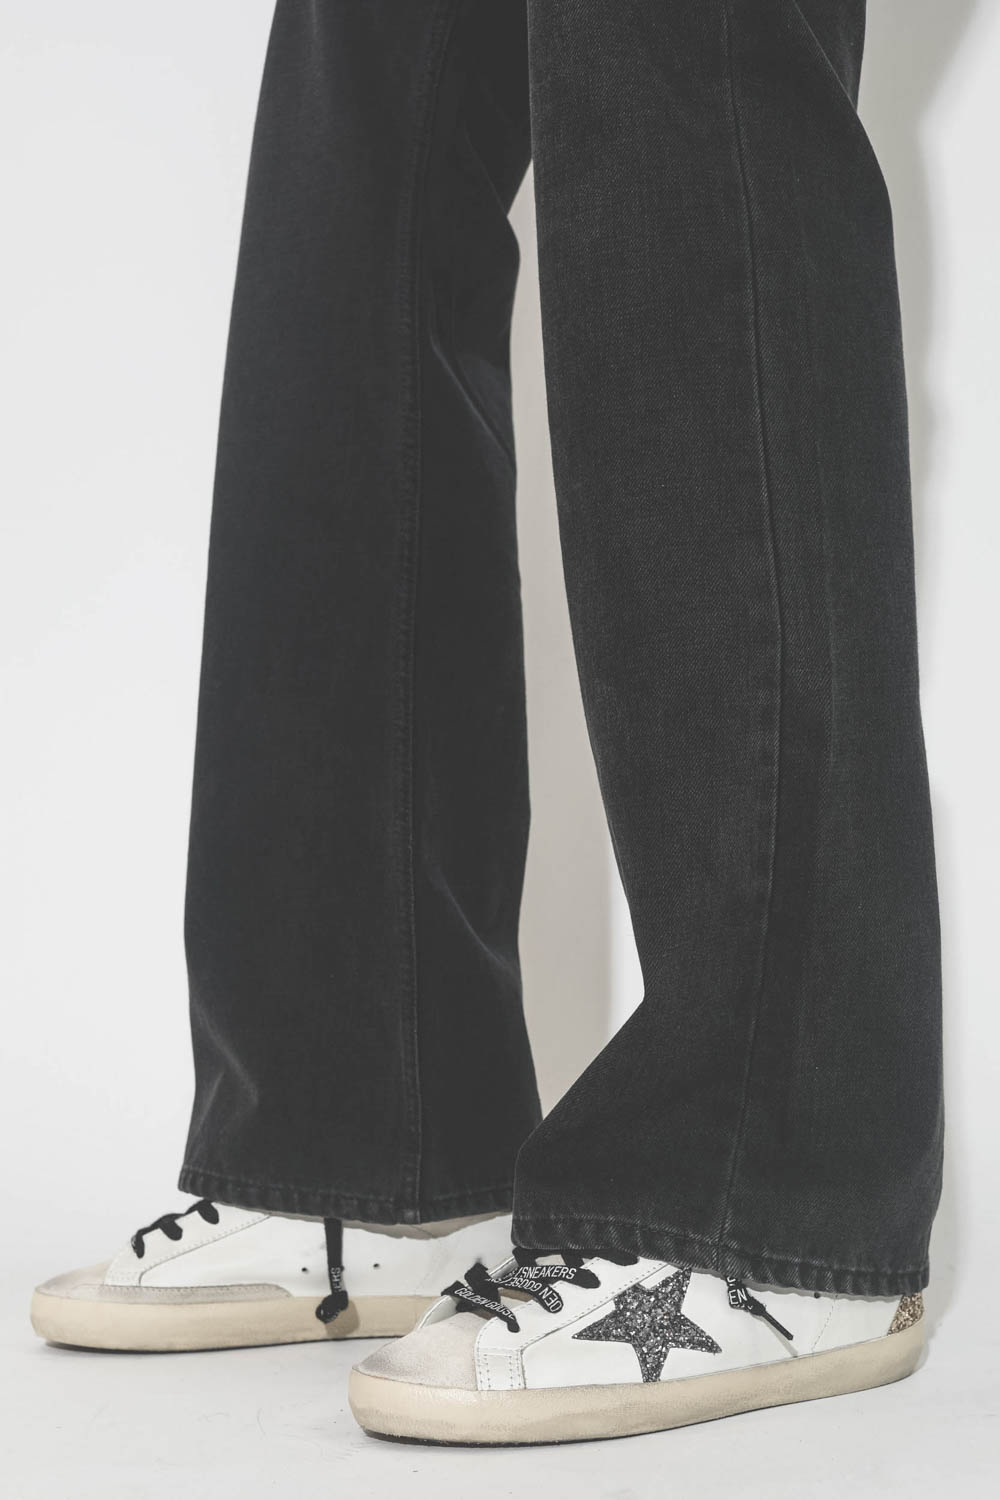 Jeans droit taille haute denim noir 100% coton non extensible Belvira Isabel Marant Etoile. Détail bas de jambes.